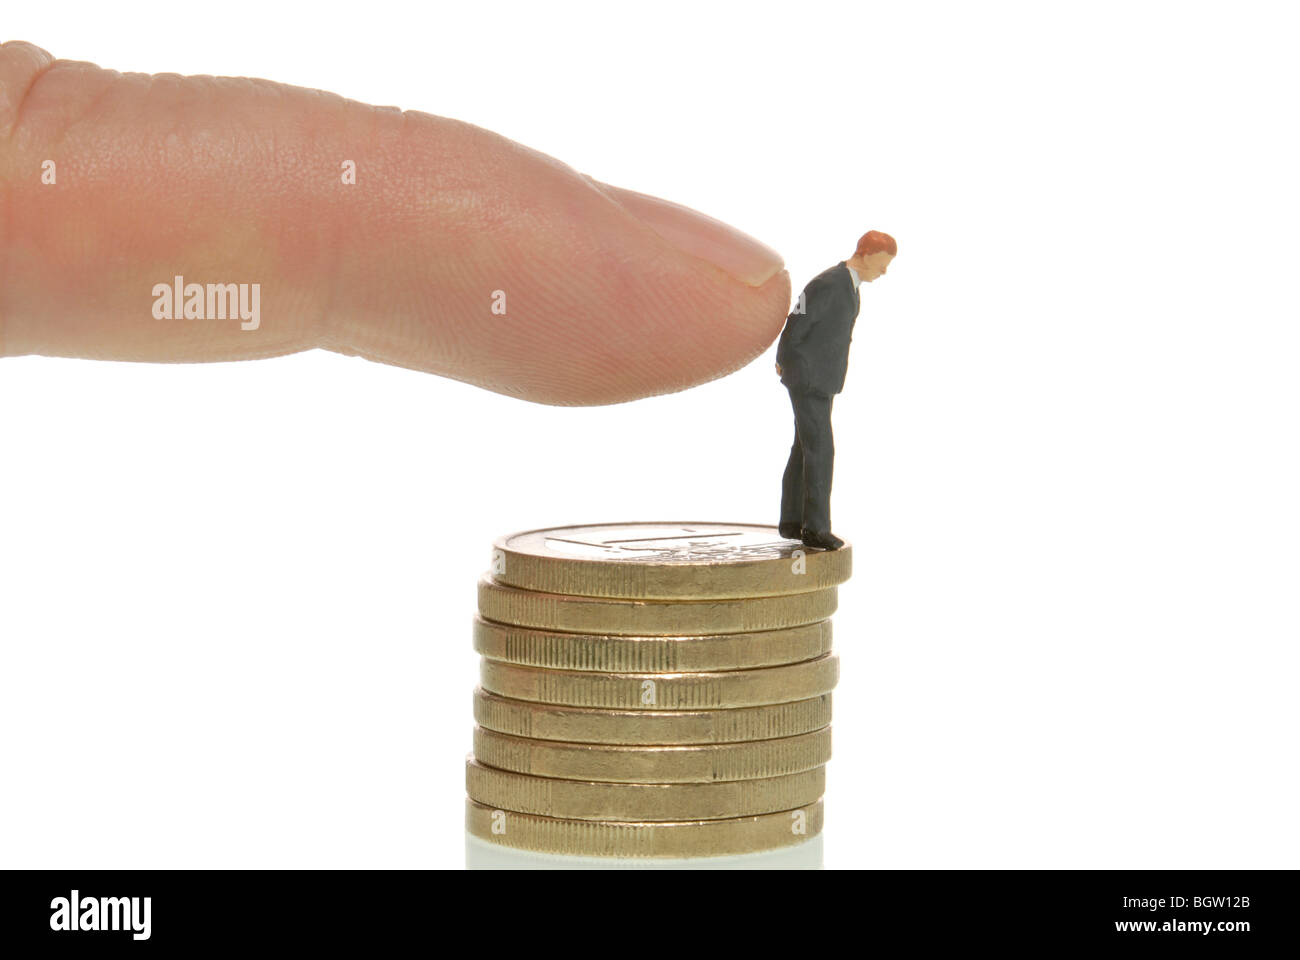 La main de l'homme pousser un homme miniature figure à partir d'une pile de pièces, image symbolique de licenciement Banque D'Images